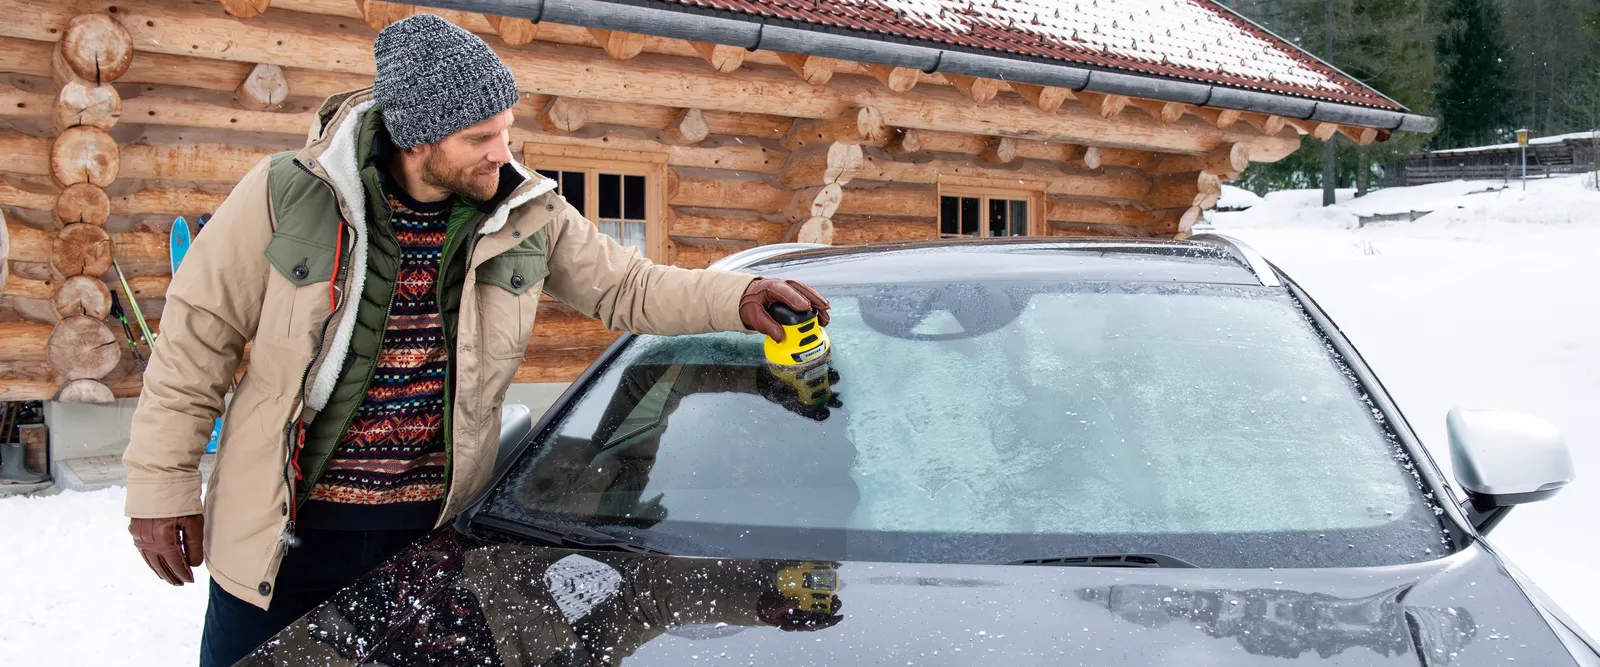 Auto Parken Schnee räumung Winter Auto Enteiser Outdoor Auto Innen